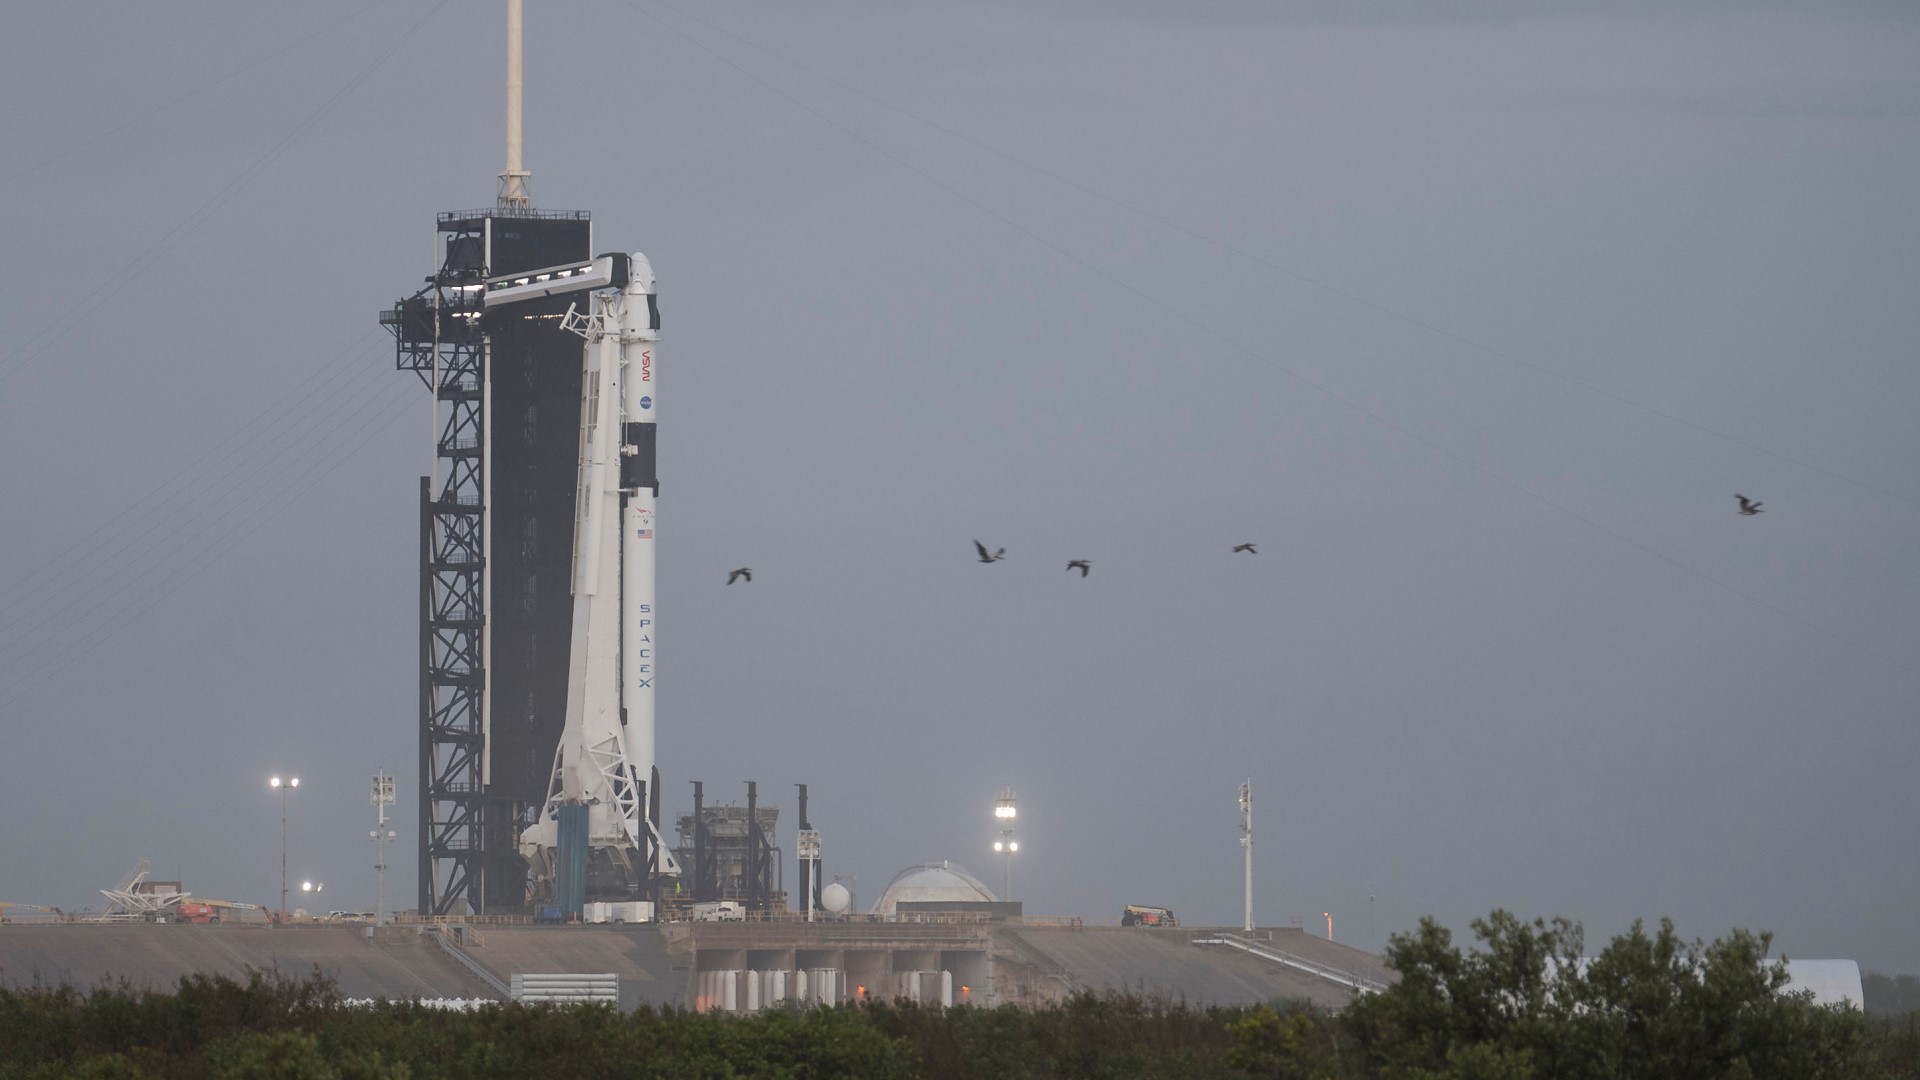 อัปเดต : SpaceX จะปล่อยภารกิจ Crew-1 ของ NASA ไปสับเปลี่ยนลูกเรือยังสถานีอวกาศ 14 พ.ย.